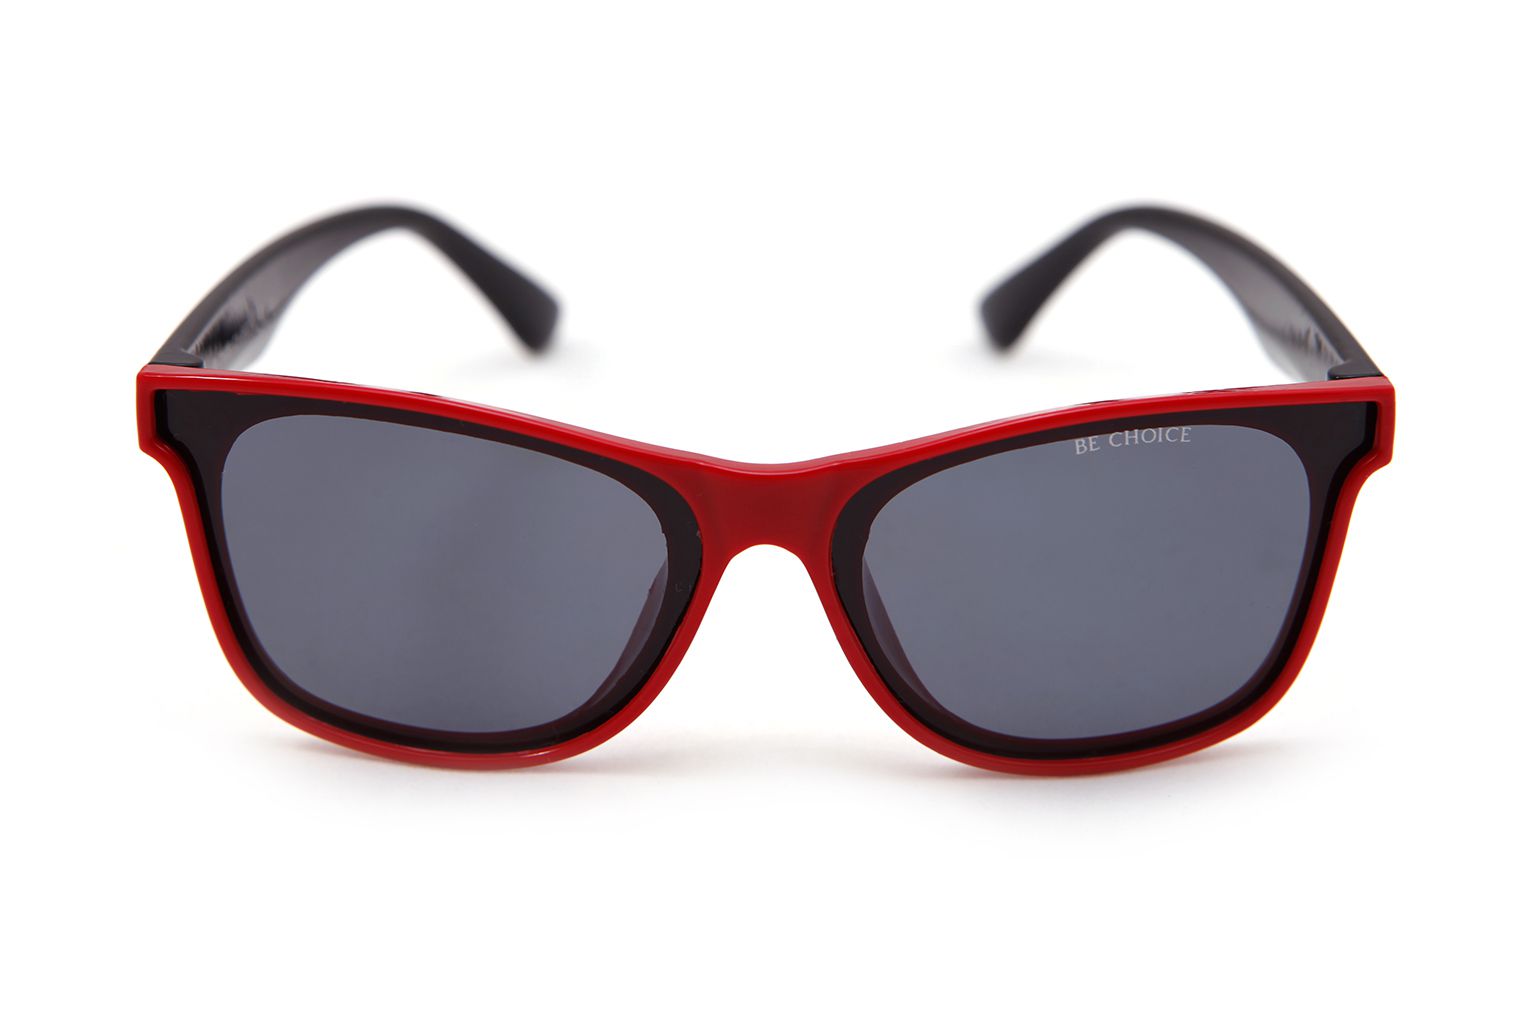 Óculos BE CHOICE Infantil Preto com Vermelho Polarizado - 6 a 9 anos